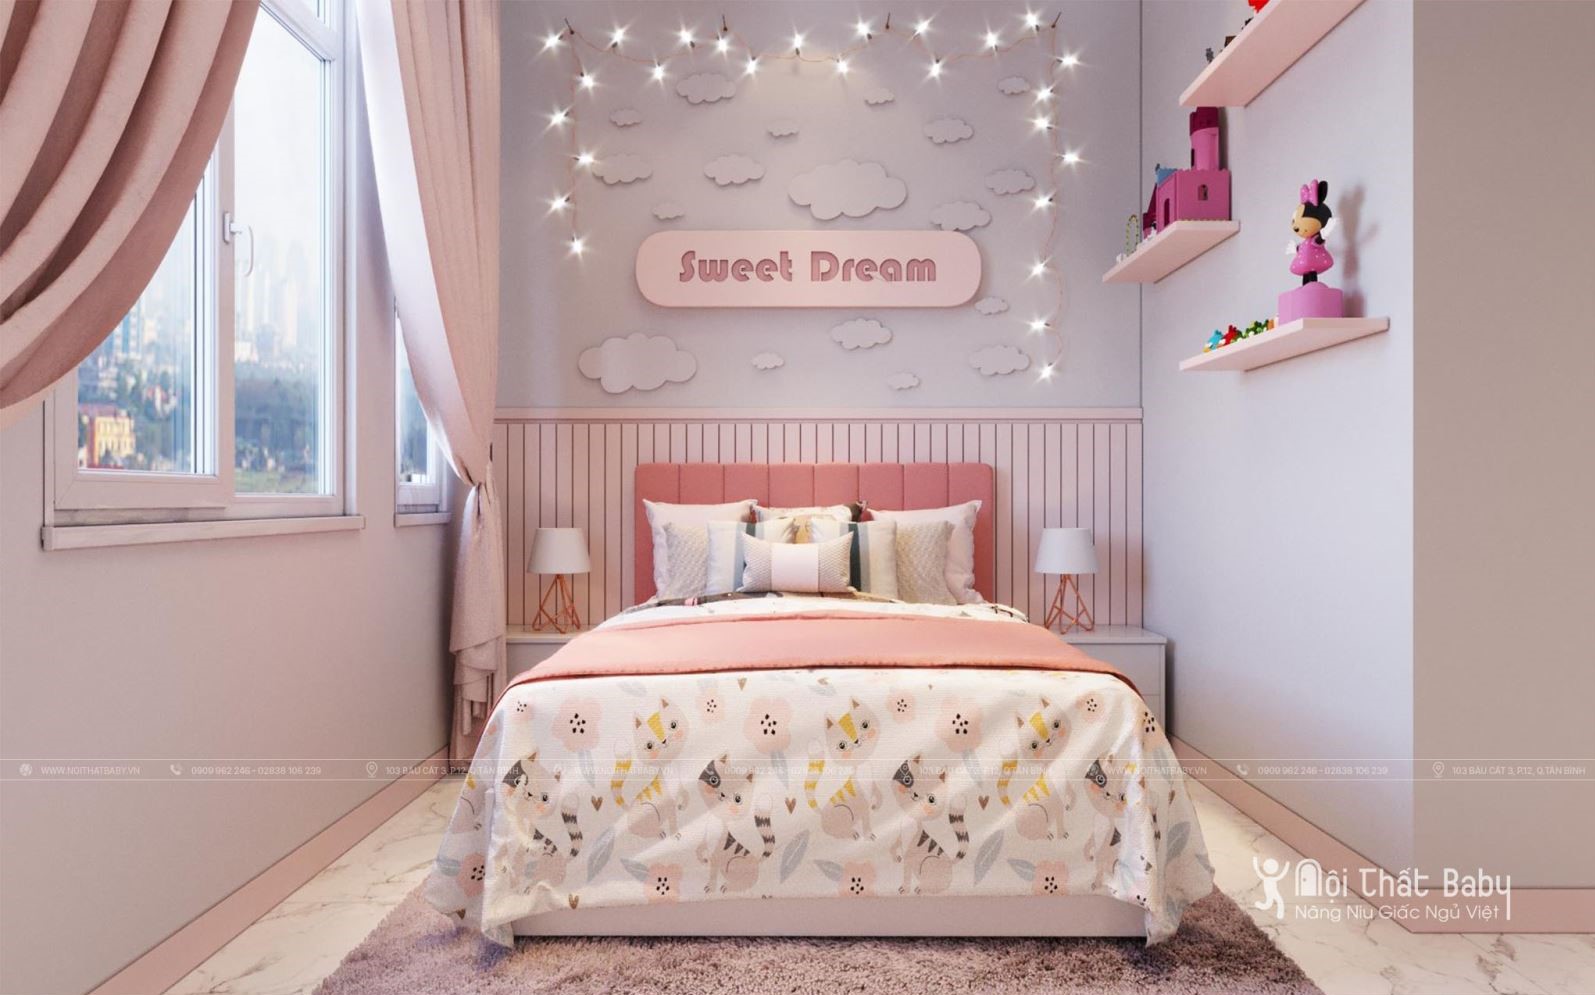 Với thiết kế tinh tế, chi tiết hình hoa và phong cách cổ điển, chiếc giường này sẵn sàng trở thành nơi nàng công chúa của bạn muốn đắm mình trong giấc mơ.